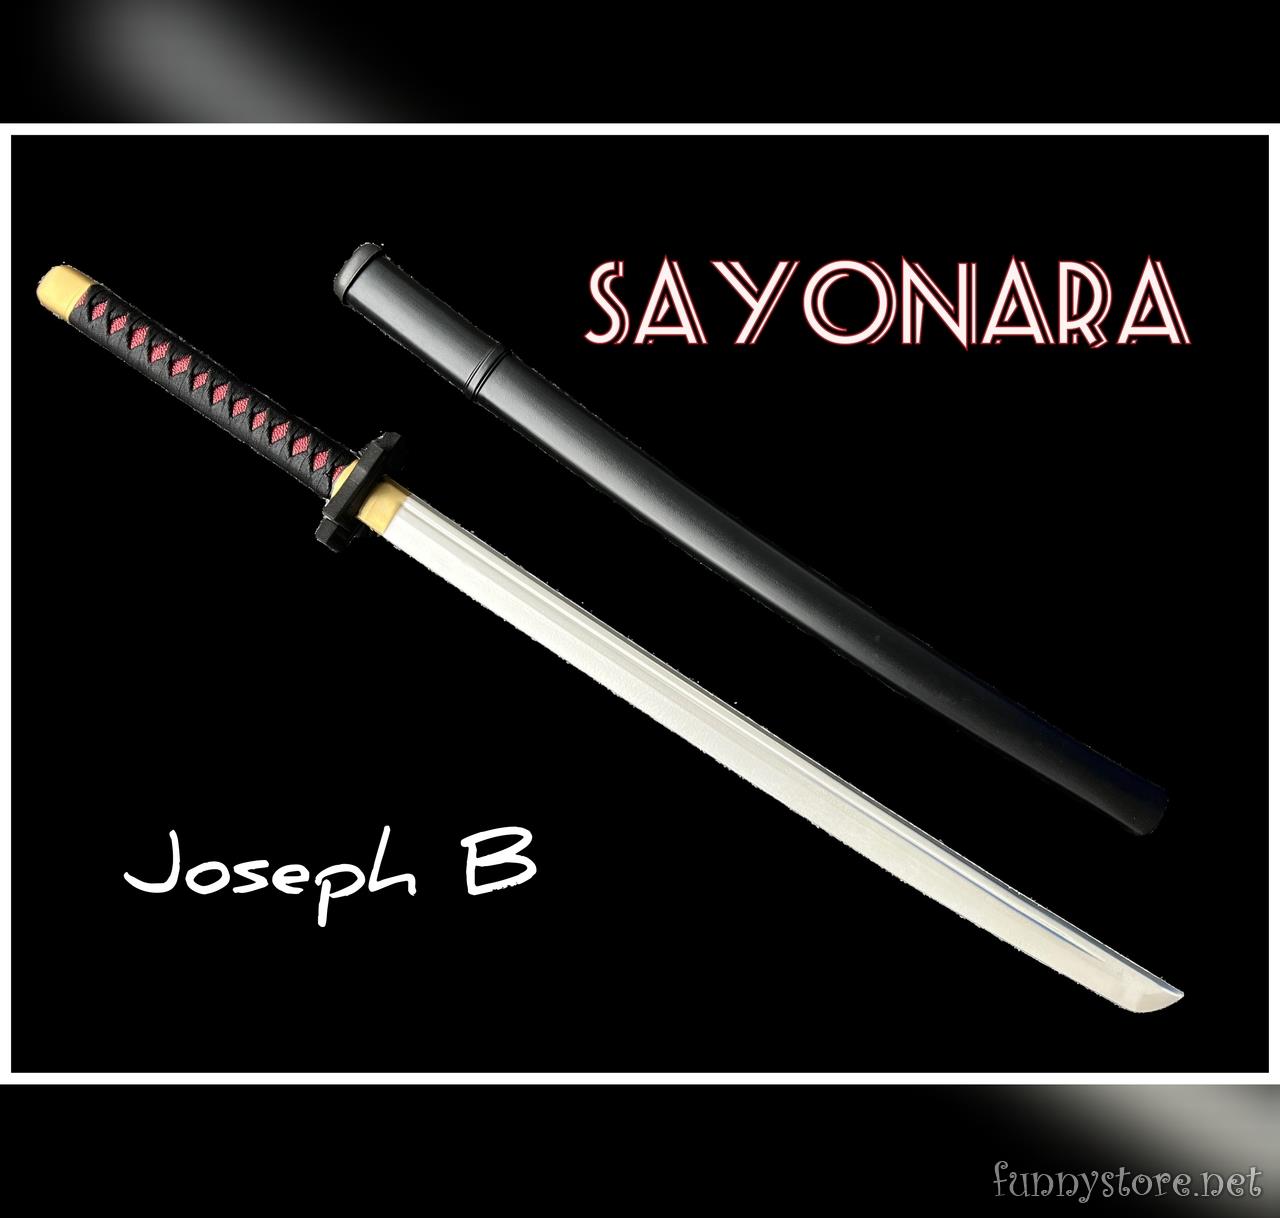 Joseph B - SAYONARA